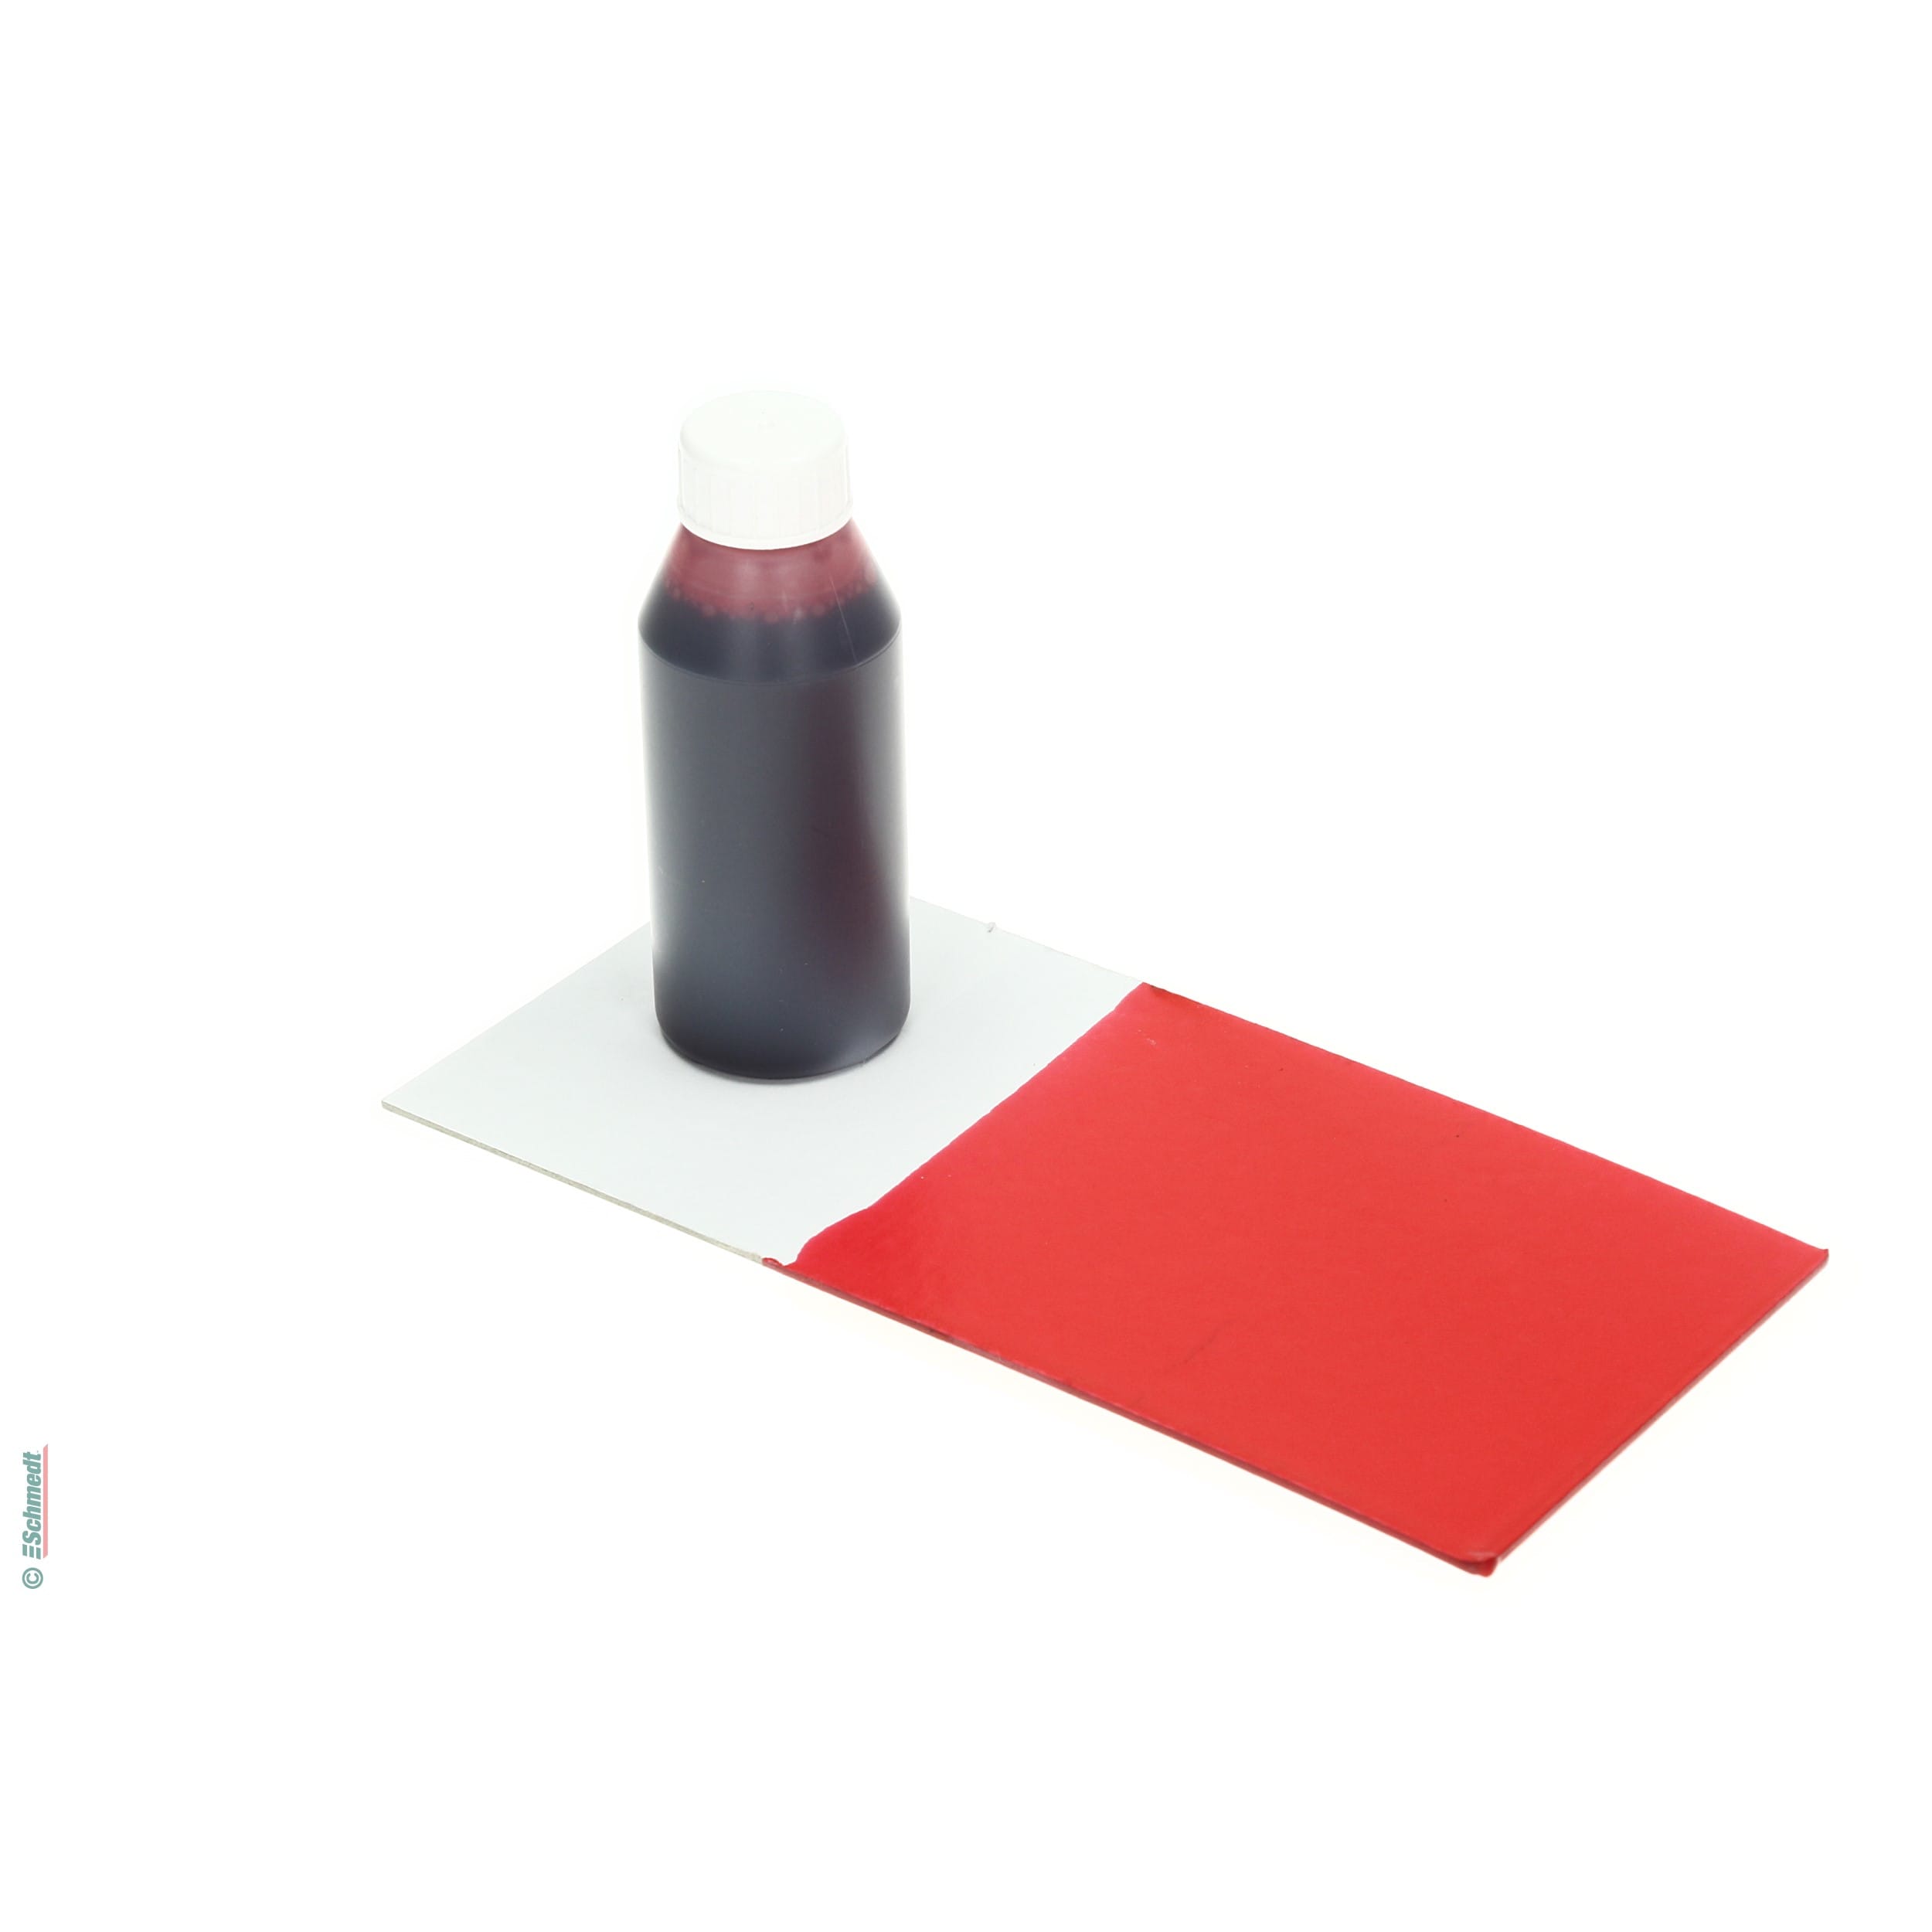 Peinture de colle - Couleur rouge - Contenu Bouteille / 990 ml - pour teindre colles à dispersion comme p. ex. pour bloc-notes ou livres à d... - image-1